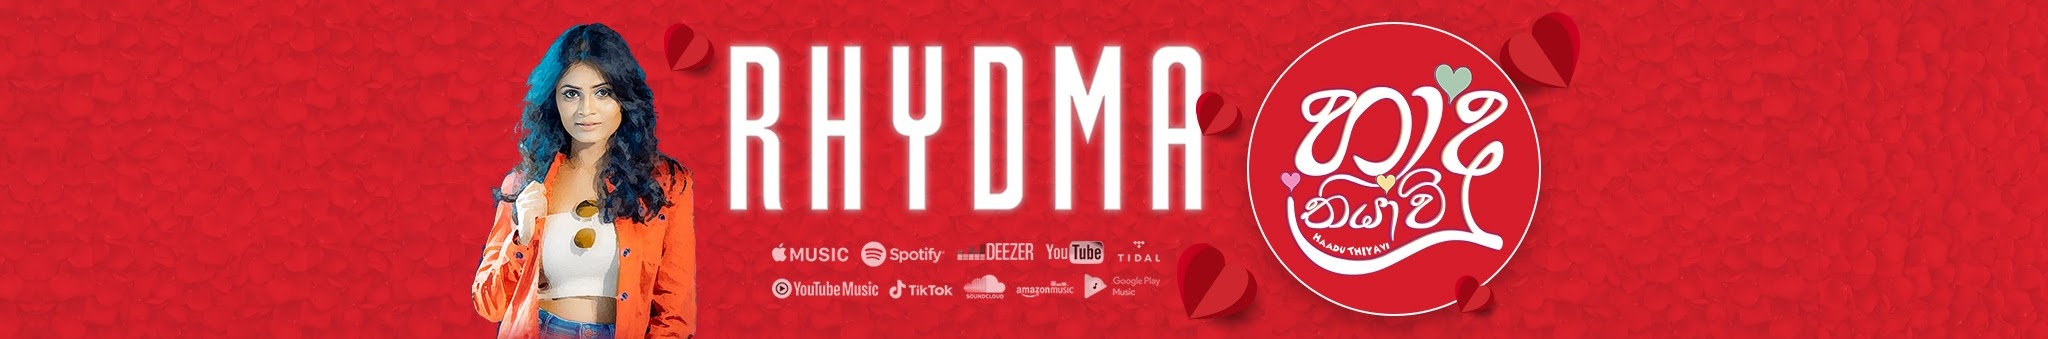 RHYDMA - On Tuby